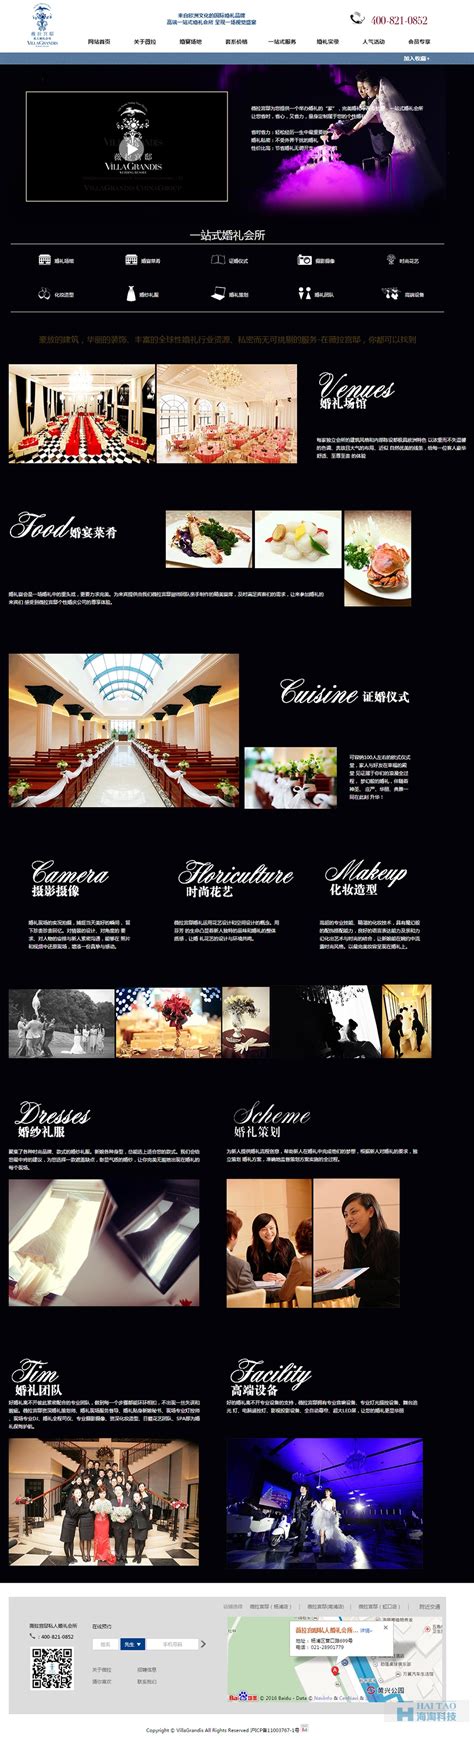 薇拉宫邸婚庆网站设计方案, 婚庆网站设计案例,企业网站设计方案-海淘科技